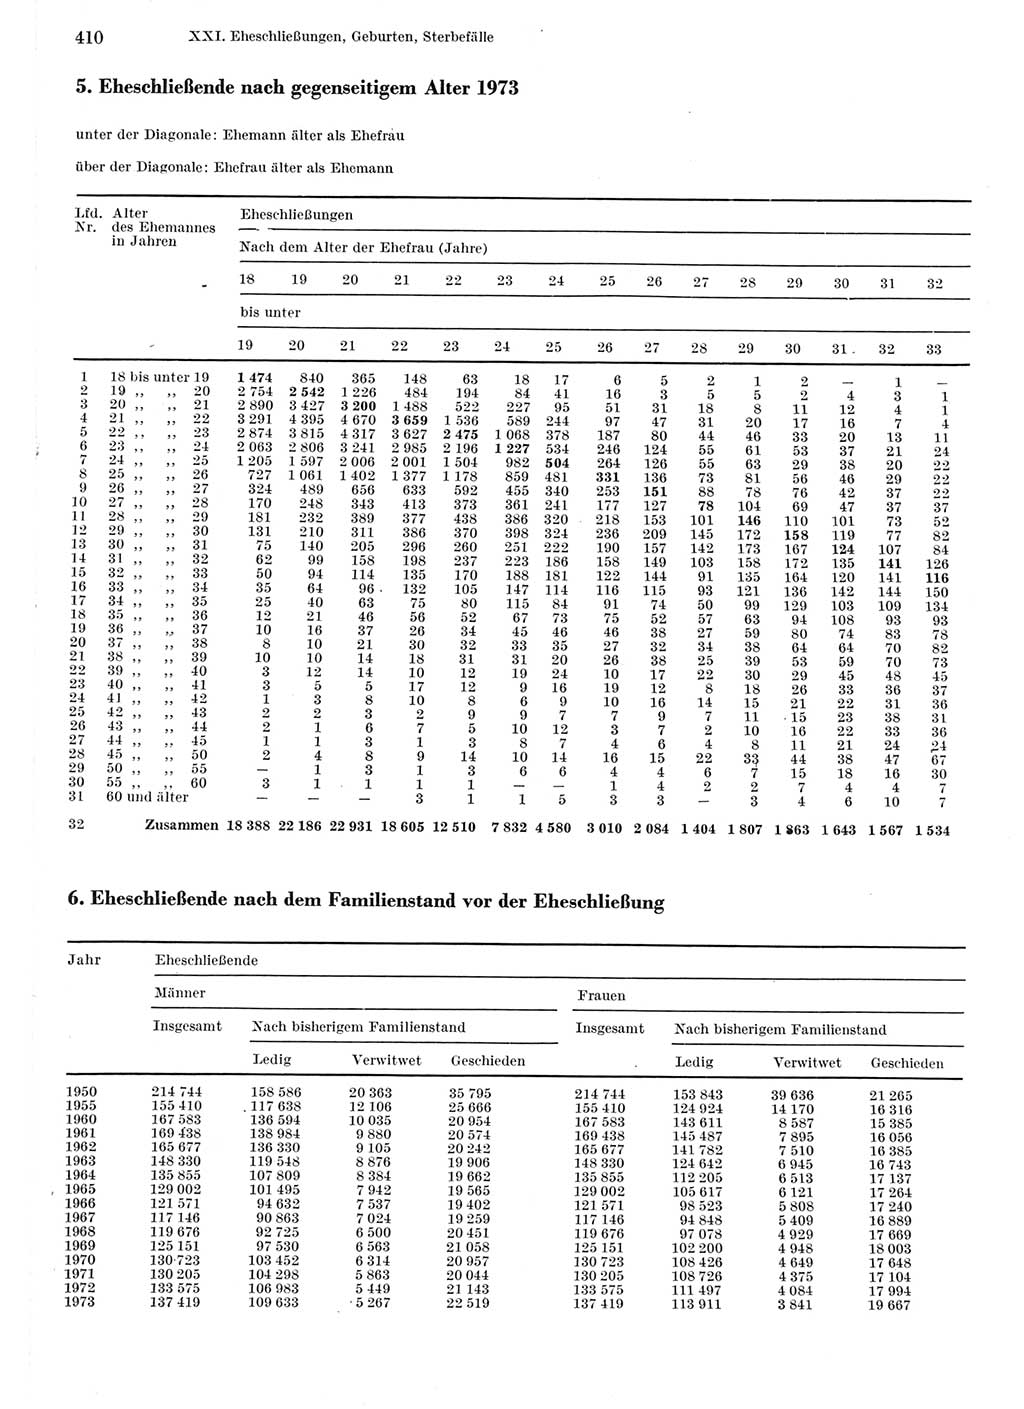 Statistisches Jahrbuch der Deutschen Demokratischen Republik (DDR) 1975, Seite 410 (Stat. Jb. DDR 1975, S. 410)